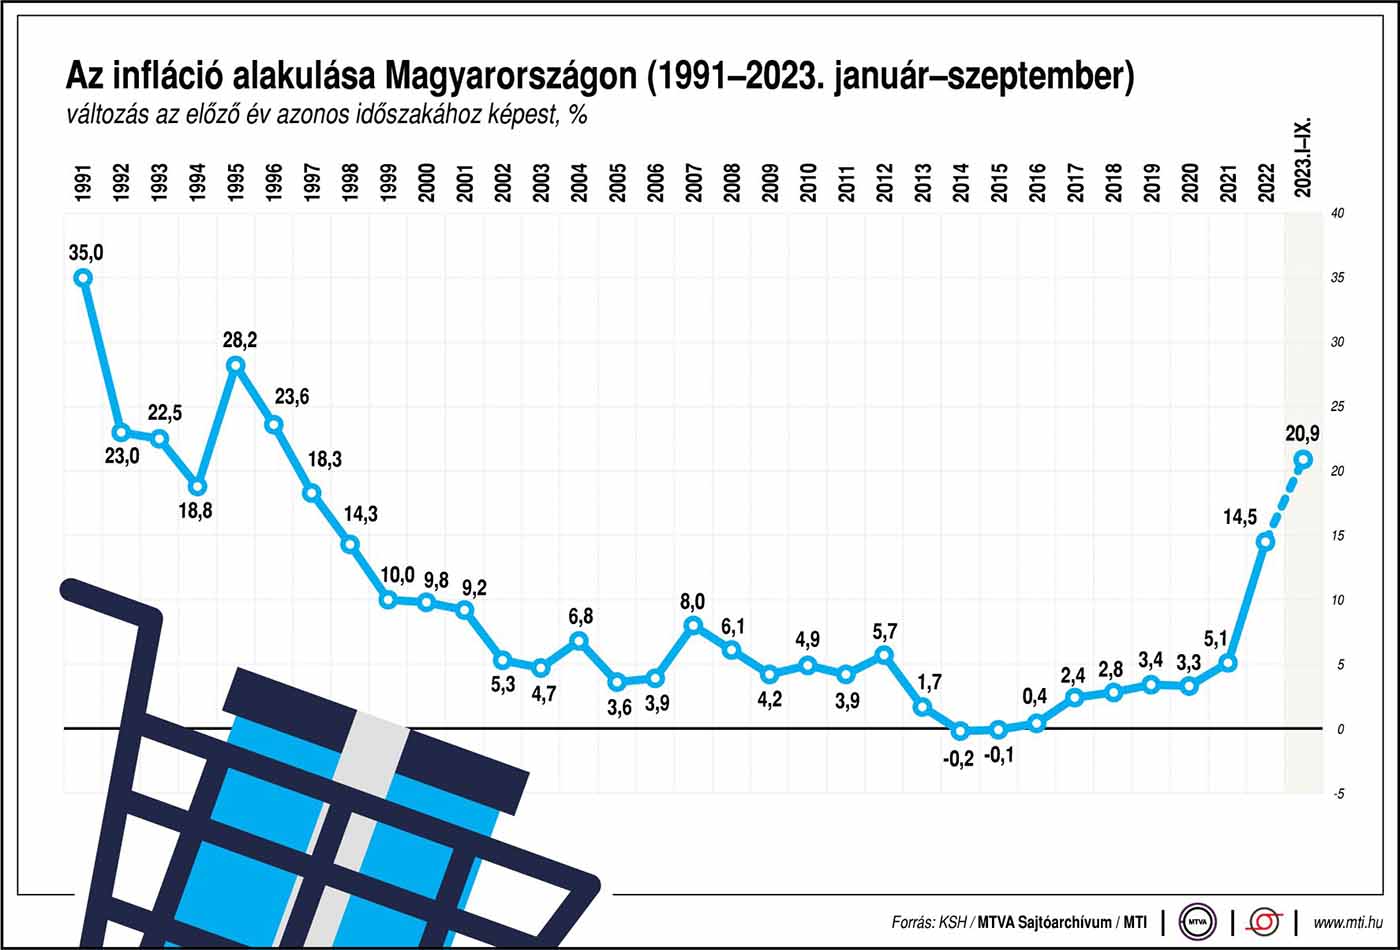 Az infláció alakulása Magyarországon 2023 szeptemberéig